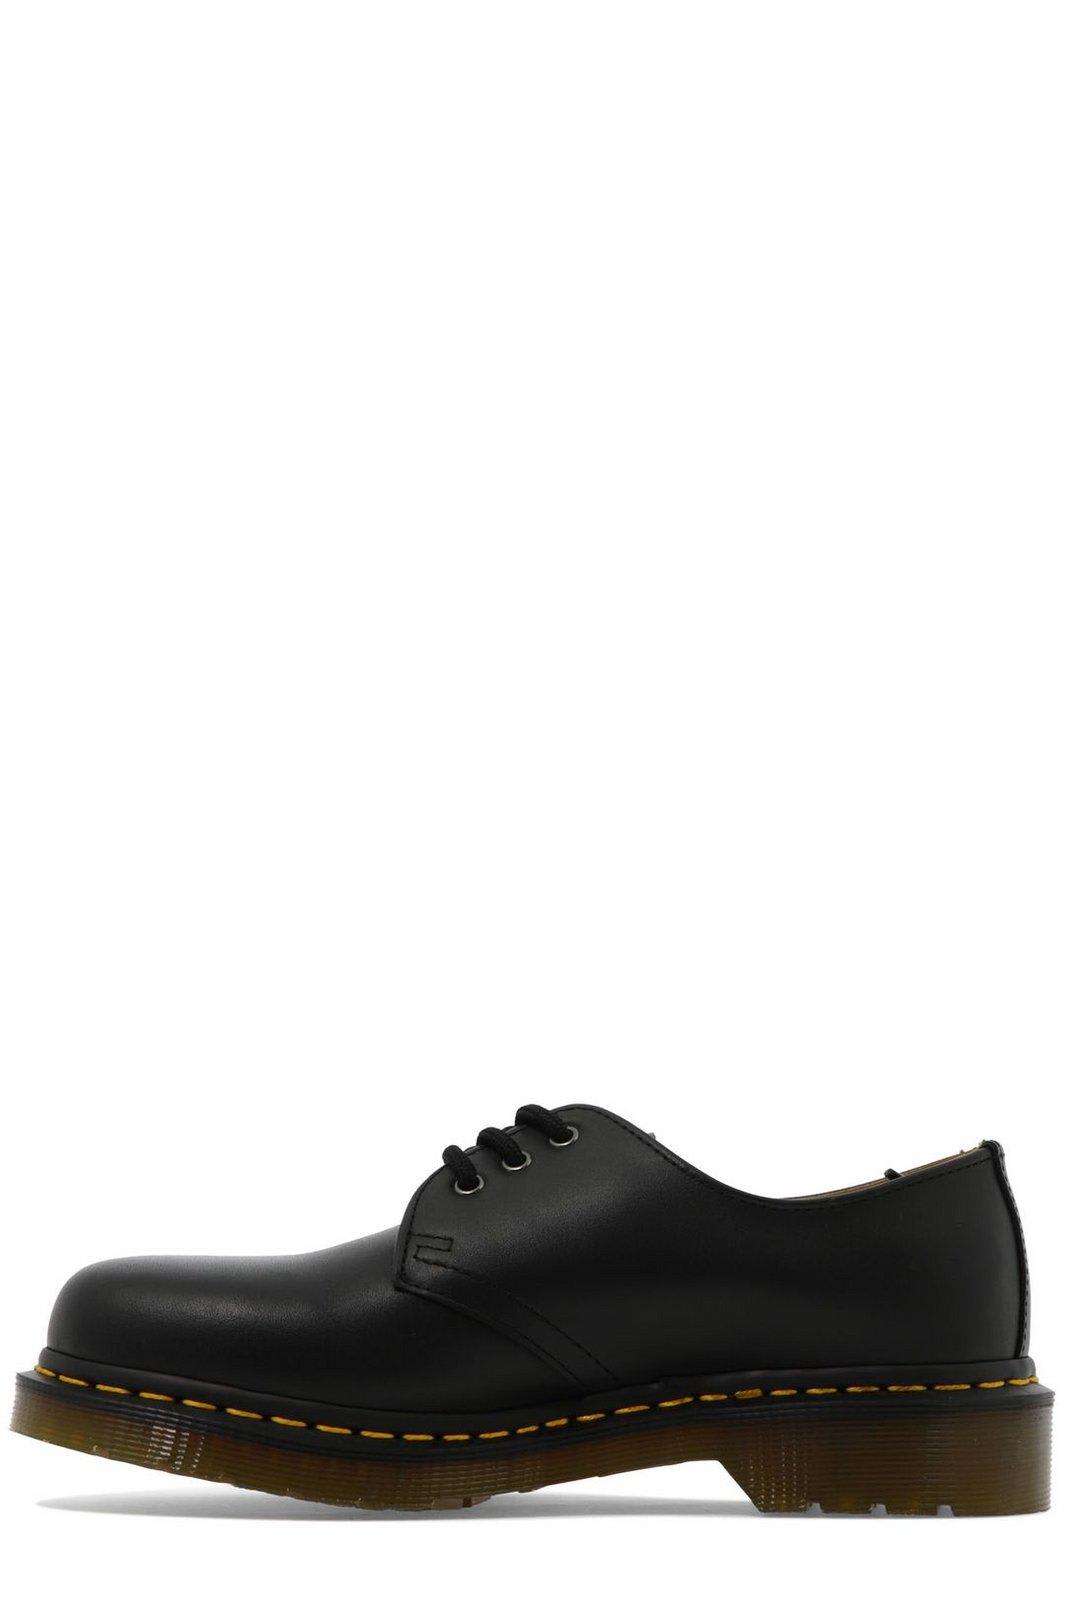 Shop Dr. Martens' 1461 Lace Up Shoes In Black